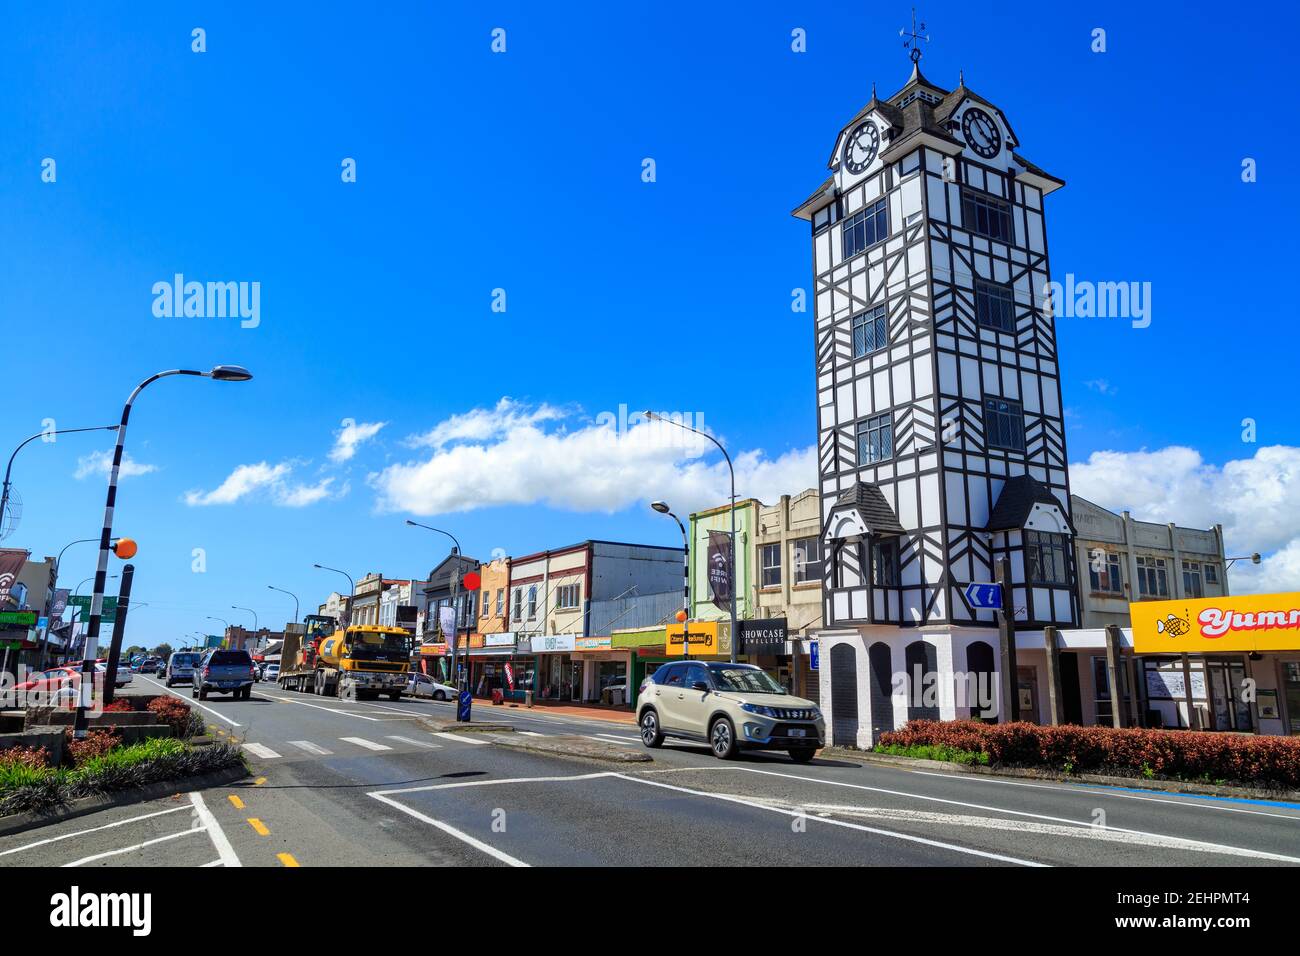 Stratford, Nueva Zelanda. A la derecha hay una torre de reloj de estilo isabelino, una de las muchas referencias de la ciudad a Shakespeare Foto de stock